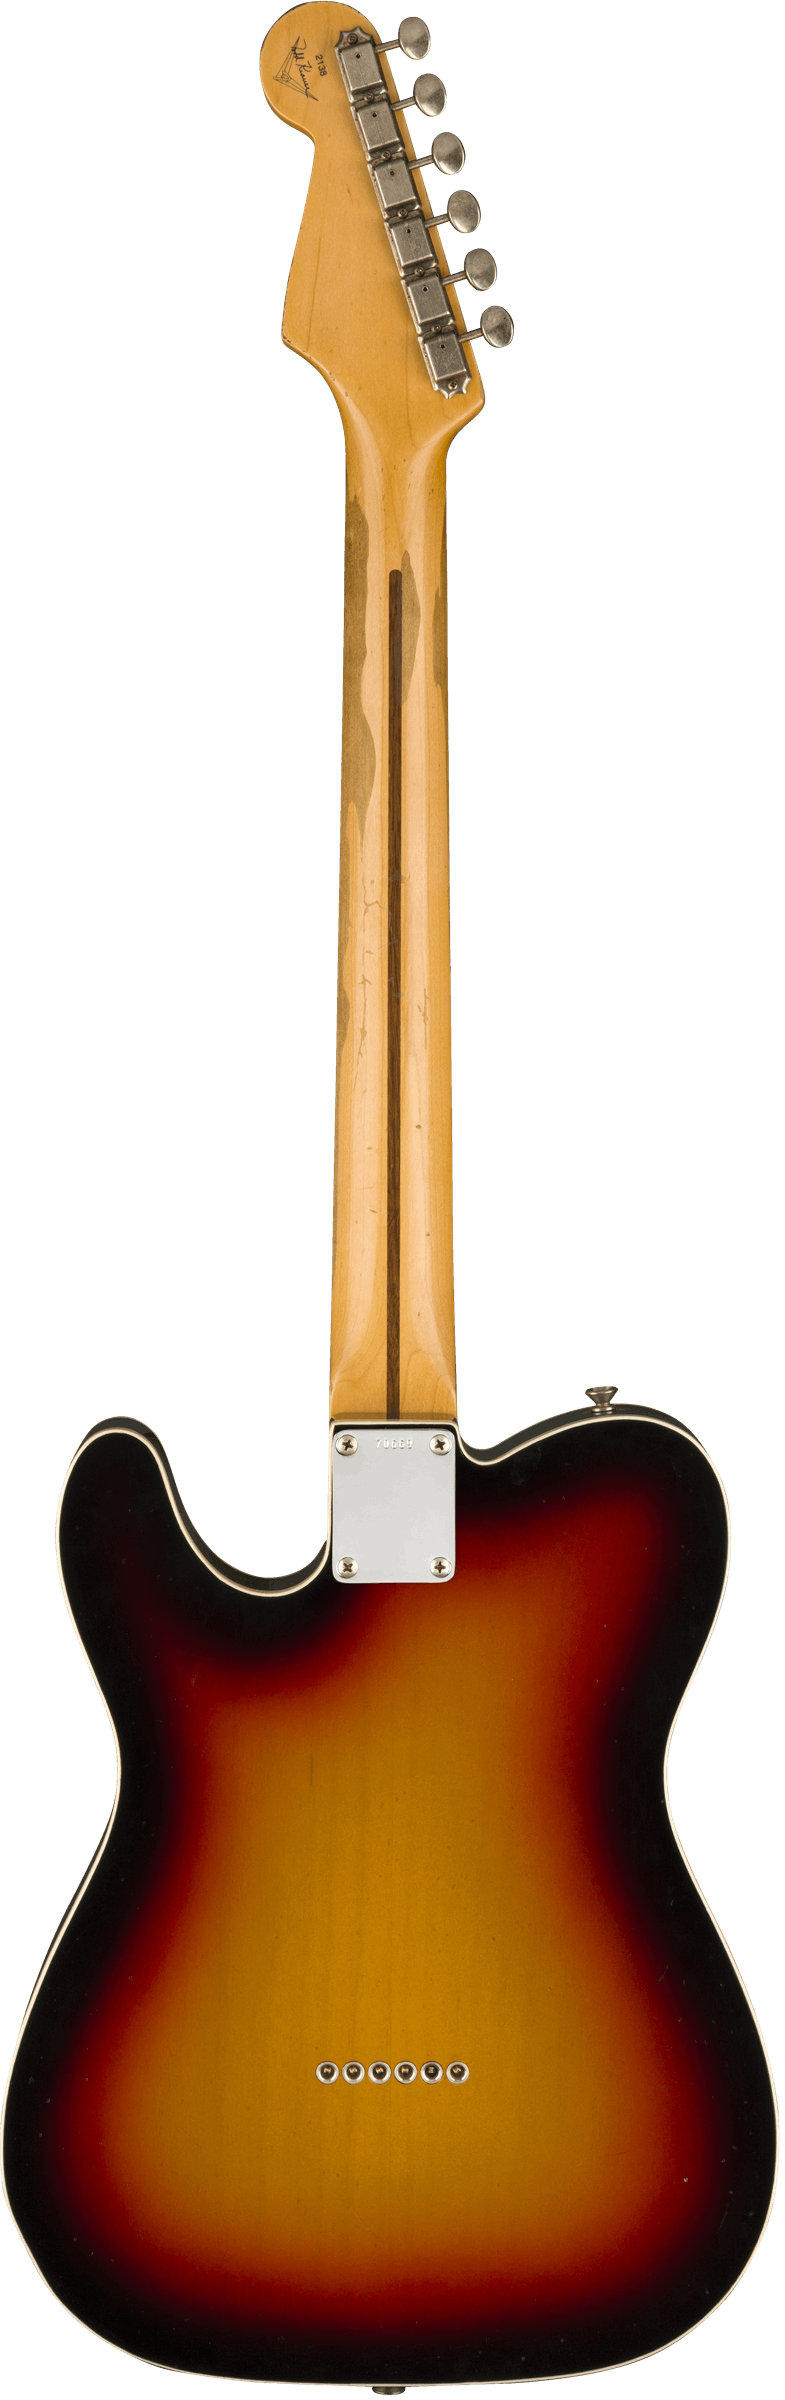 Fender Custom Shop Eric Clapton Blind Faith Telecaster in 3-Colour